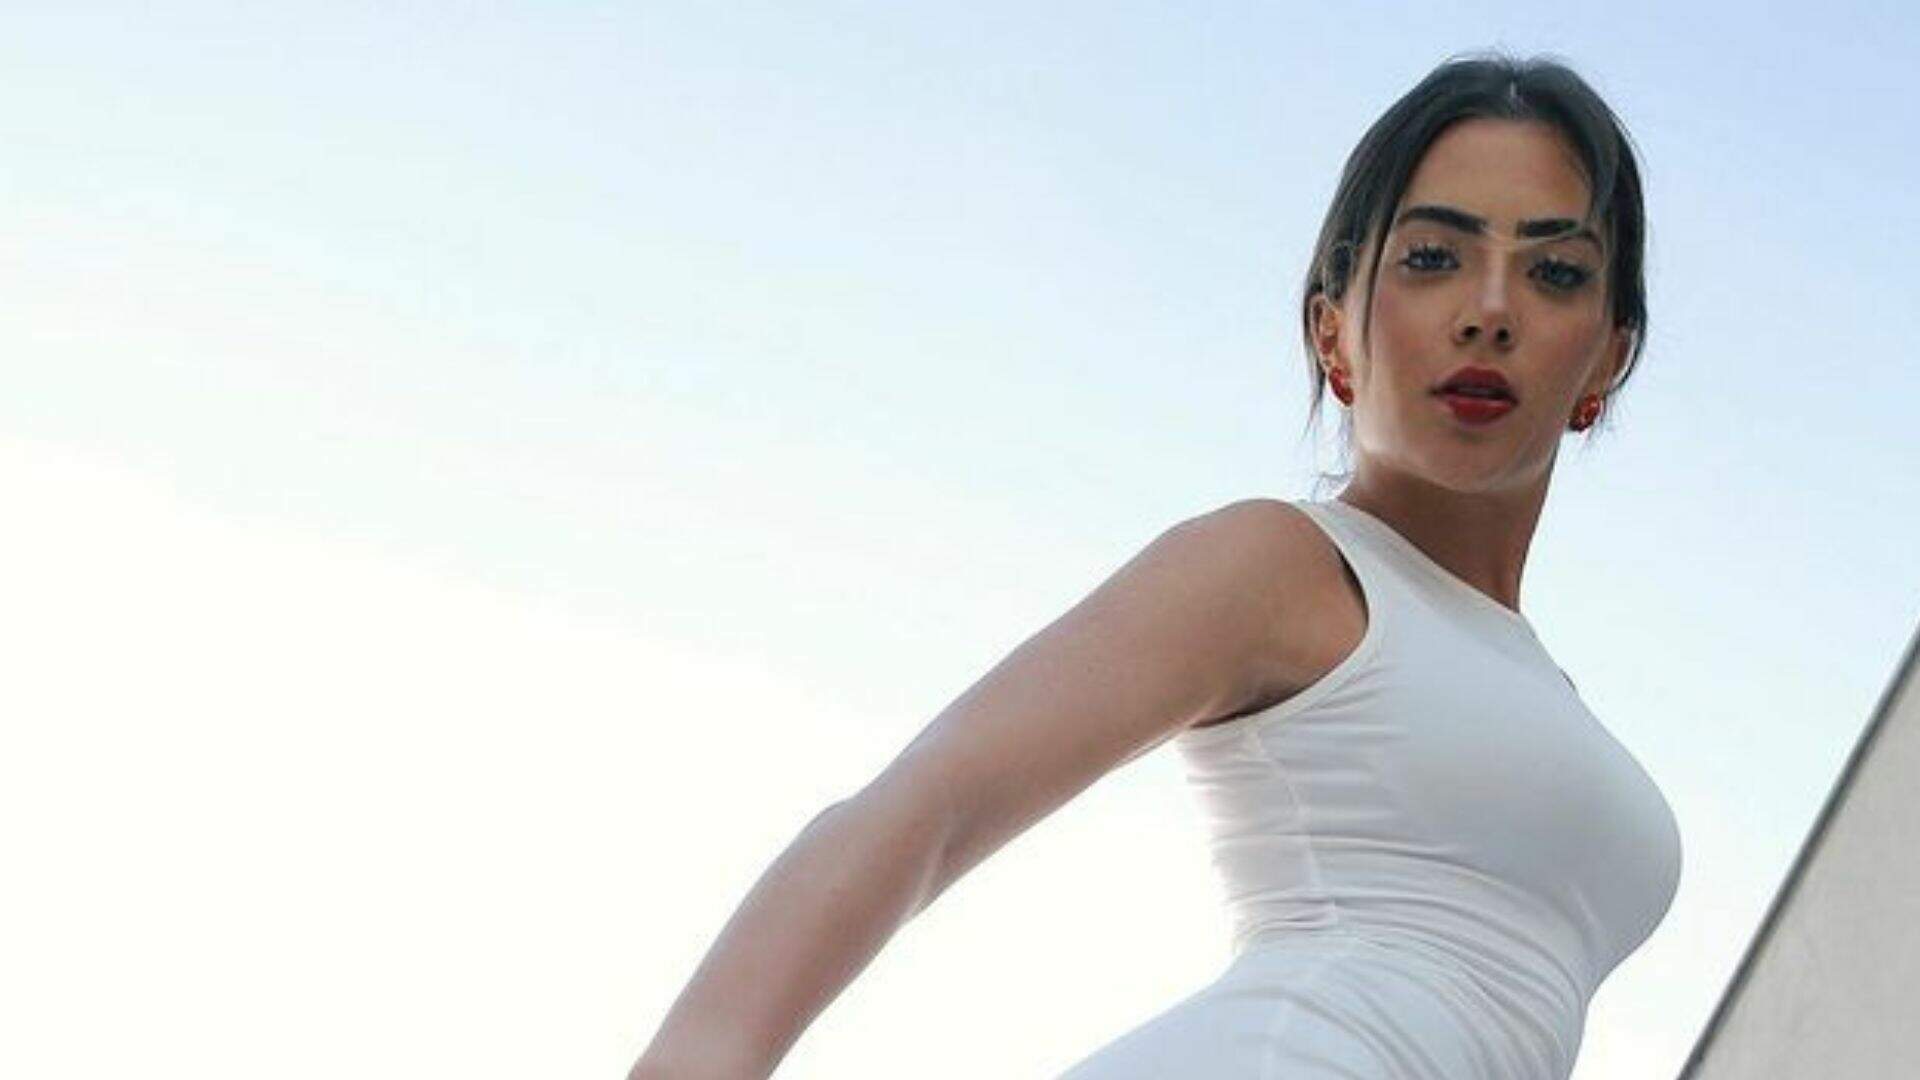 Com vestido branco e transparente, Jade Picon abre as pernas e tira selfie com o pé: “Ops” - Metropolitana FM